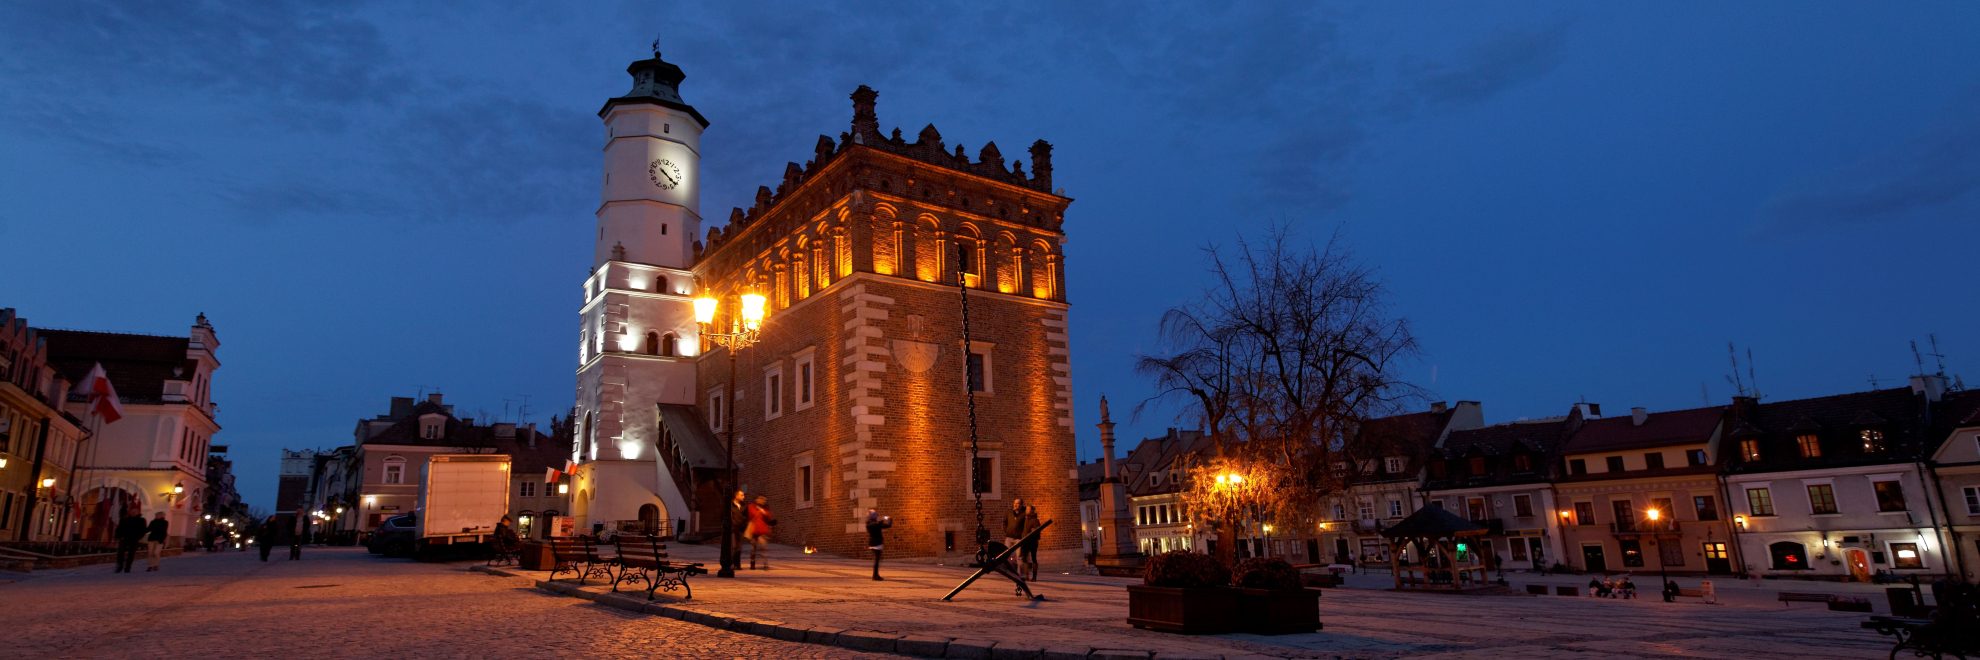 Sandomierz - rynek, ratusz.jpg